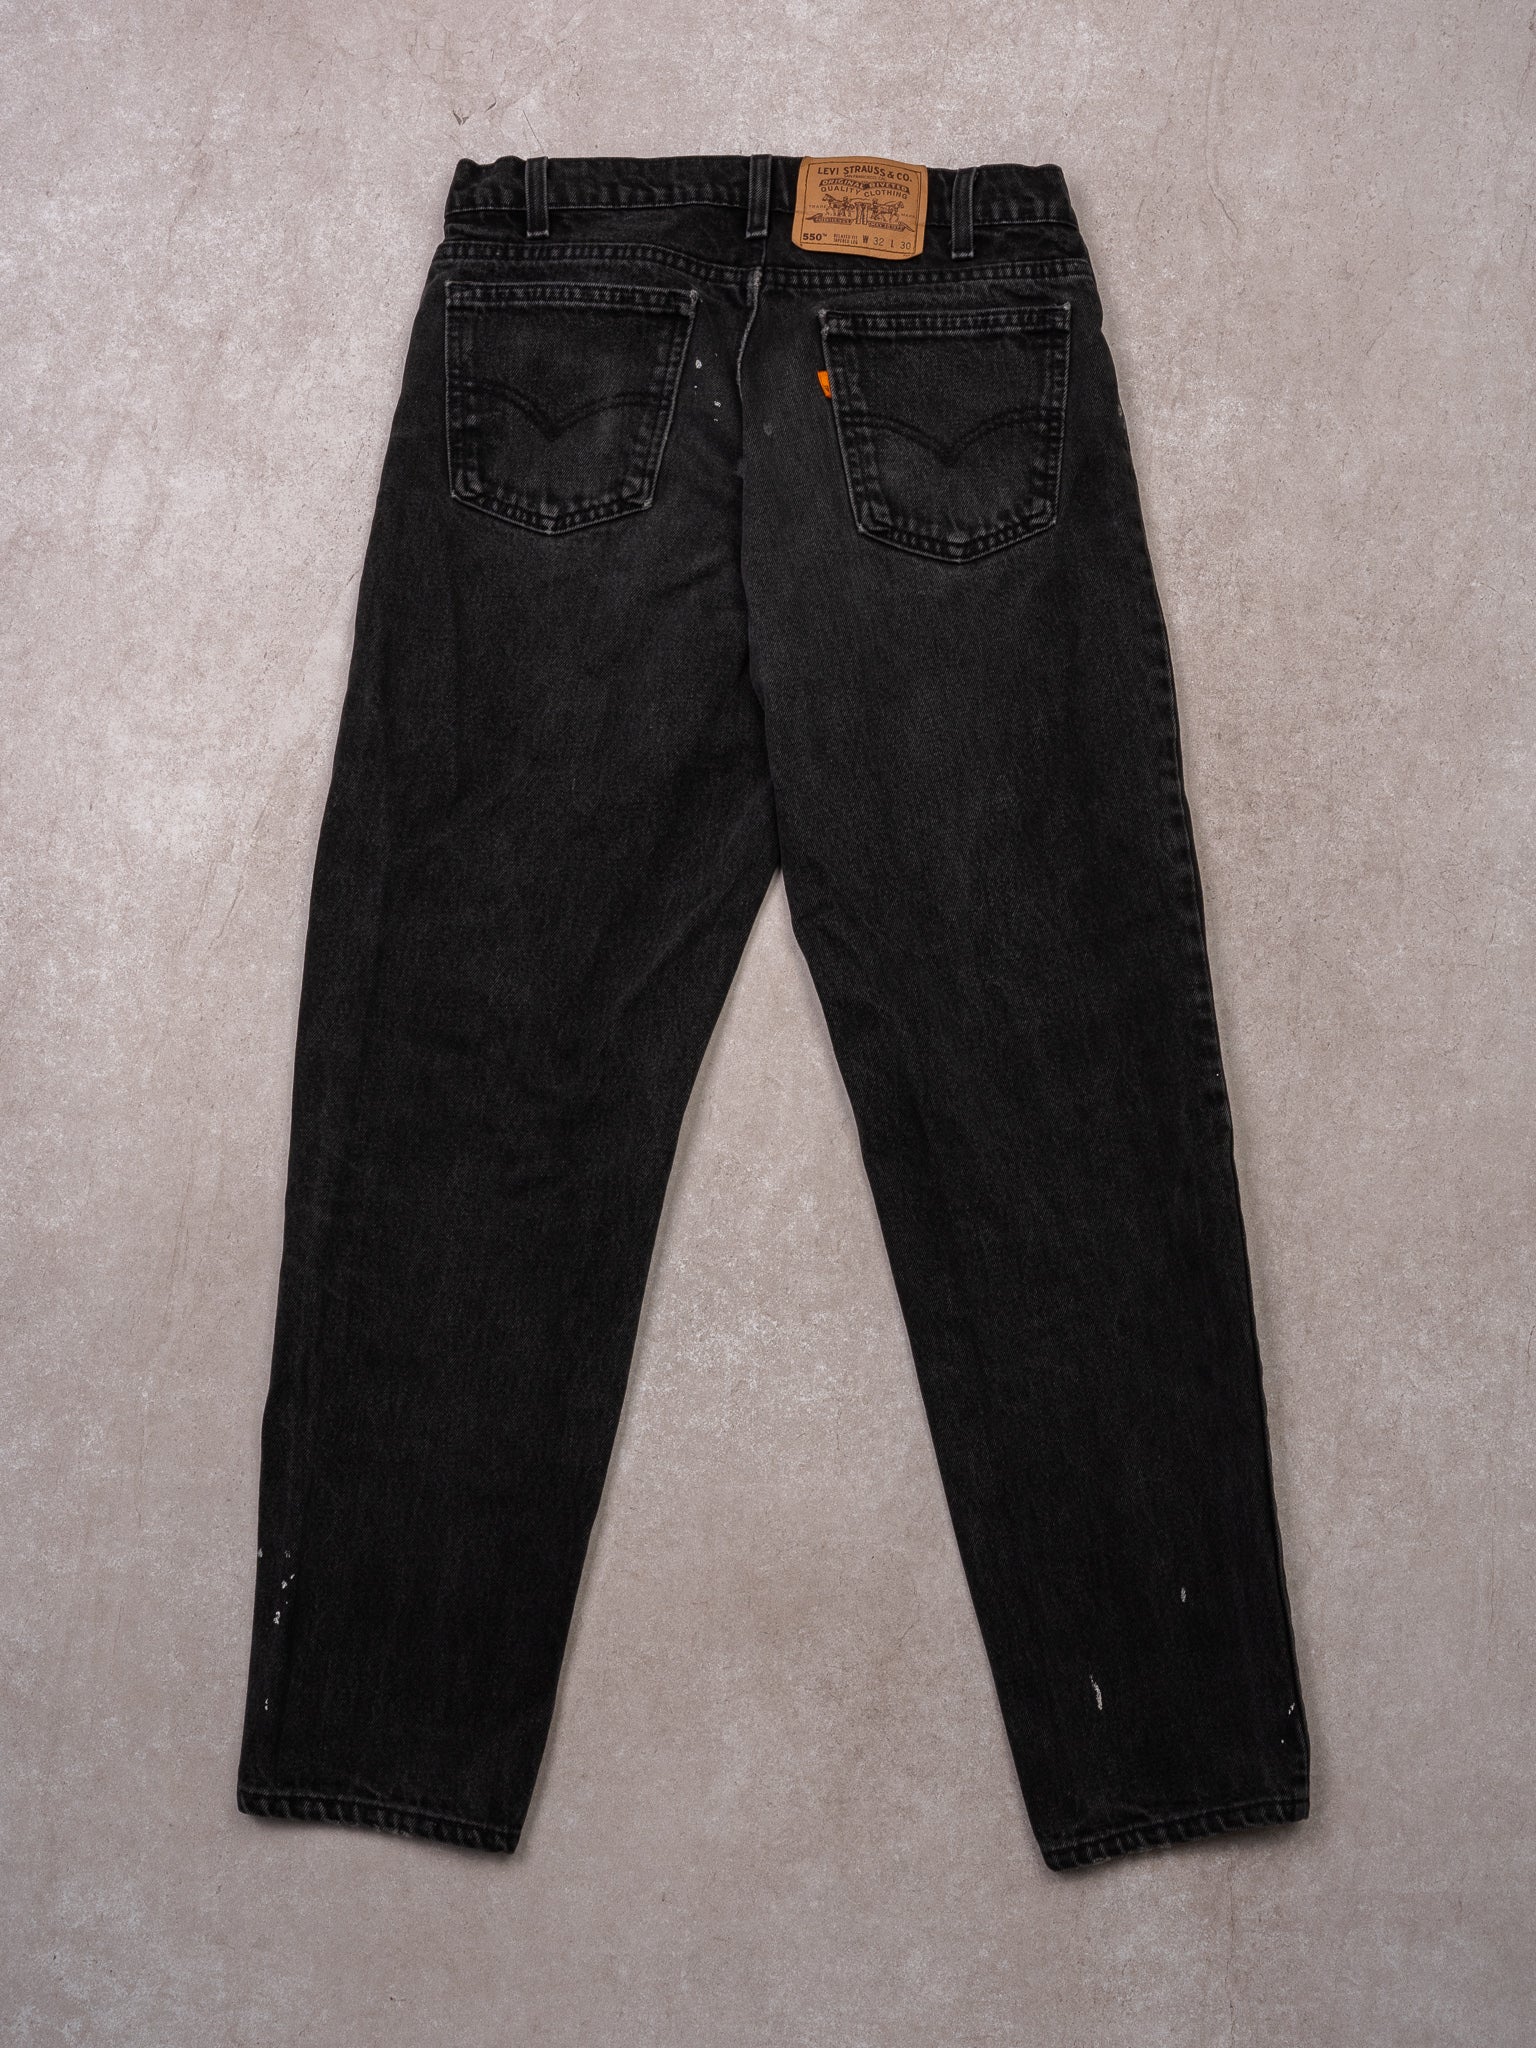 Vintage 1970s Black Levi 550 Orange Tab Jeans (30 x 30)